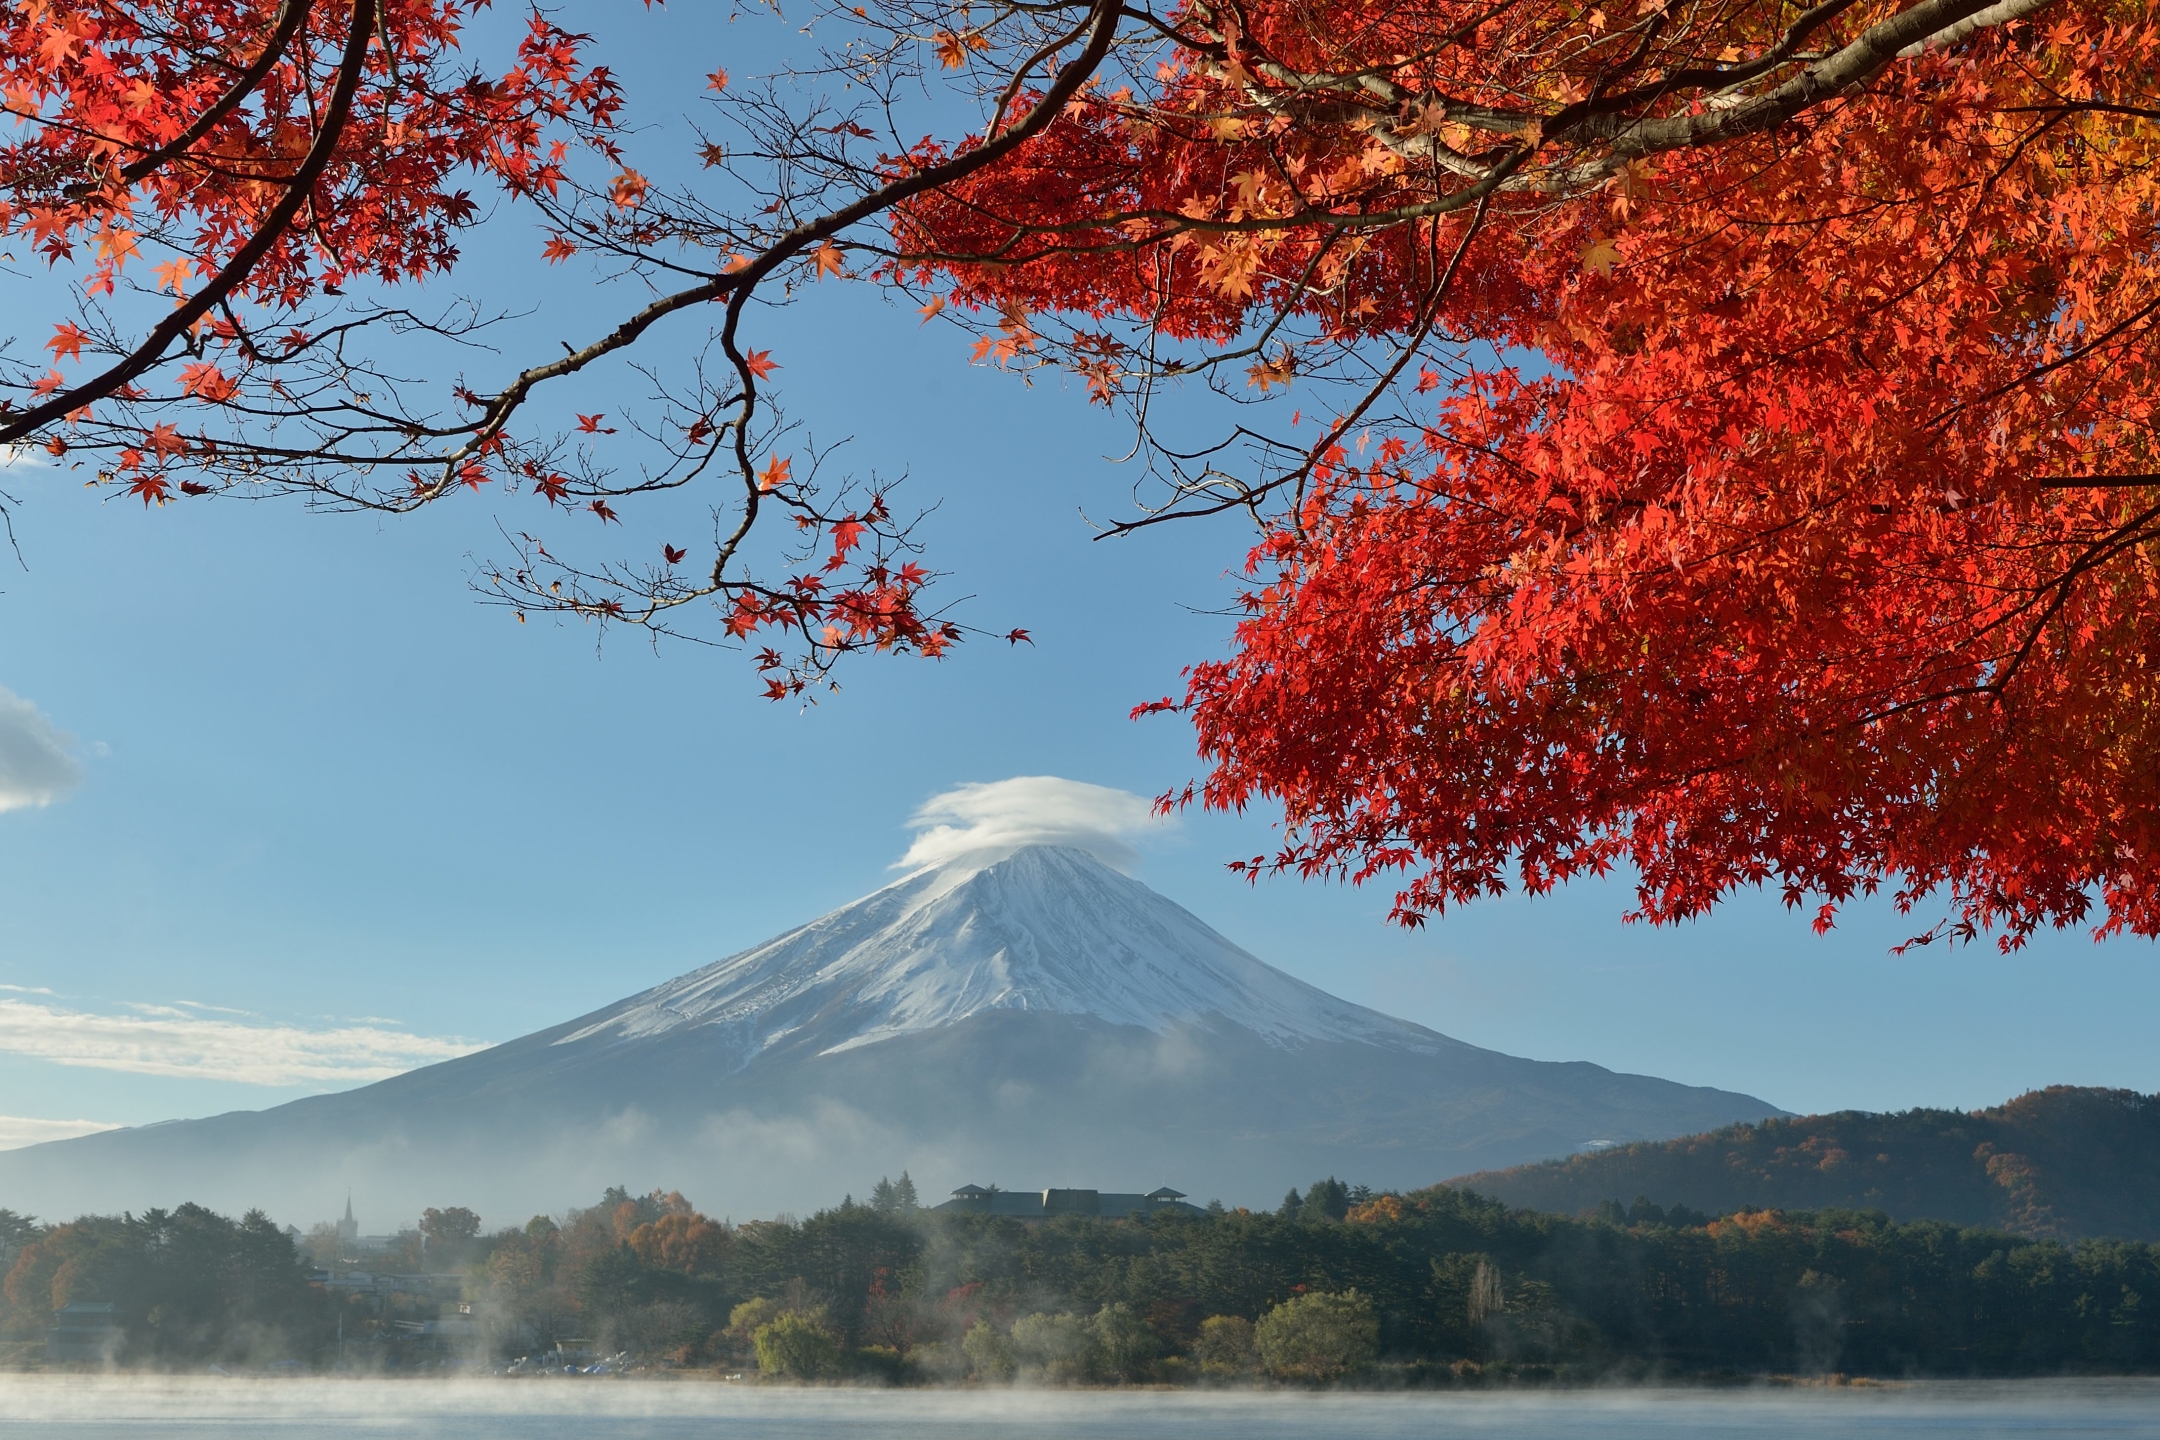 Скачать обои бесплатно Природа, Осень, Япония, Вулкан, Падать, Гора Фудзи, Вулканы, Земля/природа картинка на рабочий стол ПК